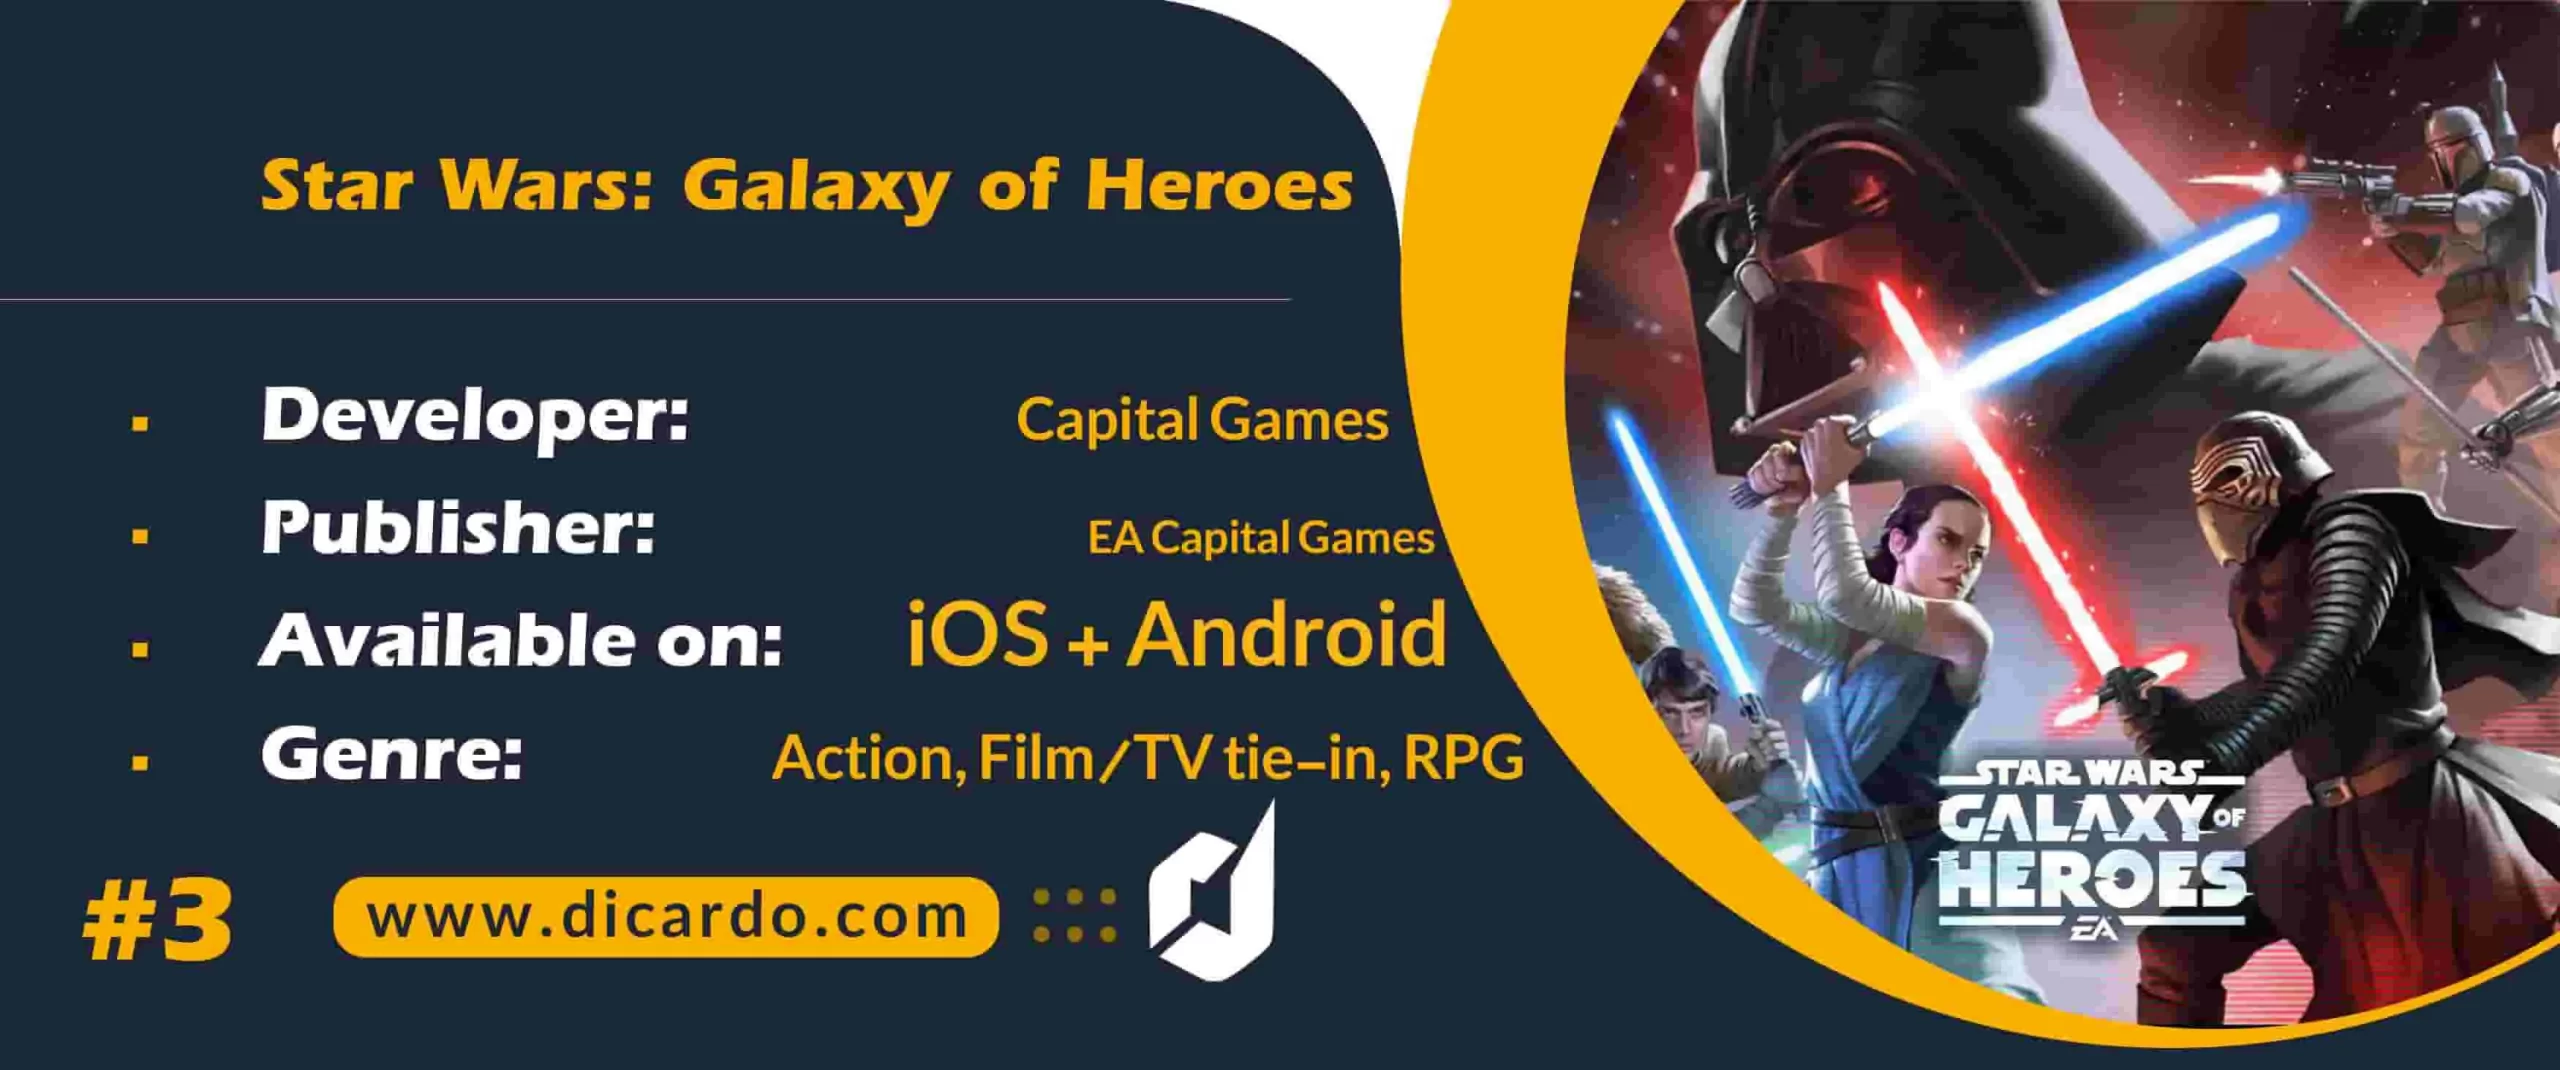 #3 جنگ ستارگان: کهکشان قهرمانان Star Wars: Galaxy of Heroes از برترین بازیهای Star Wars آر پی جی